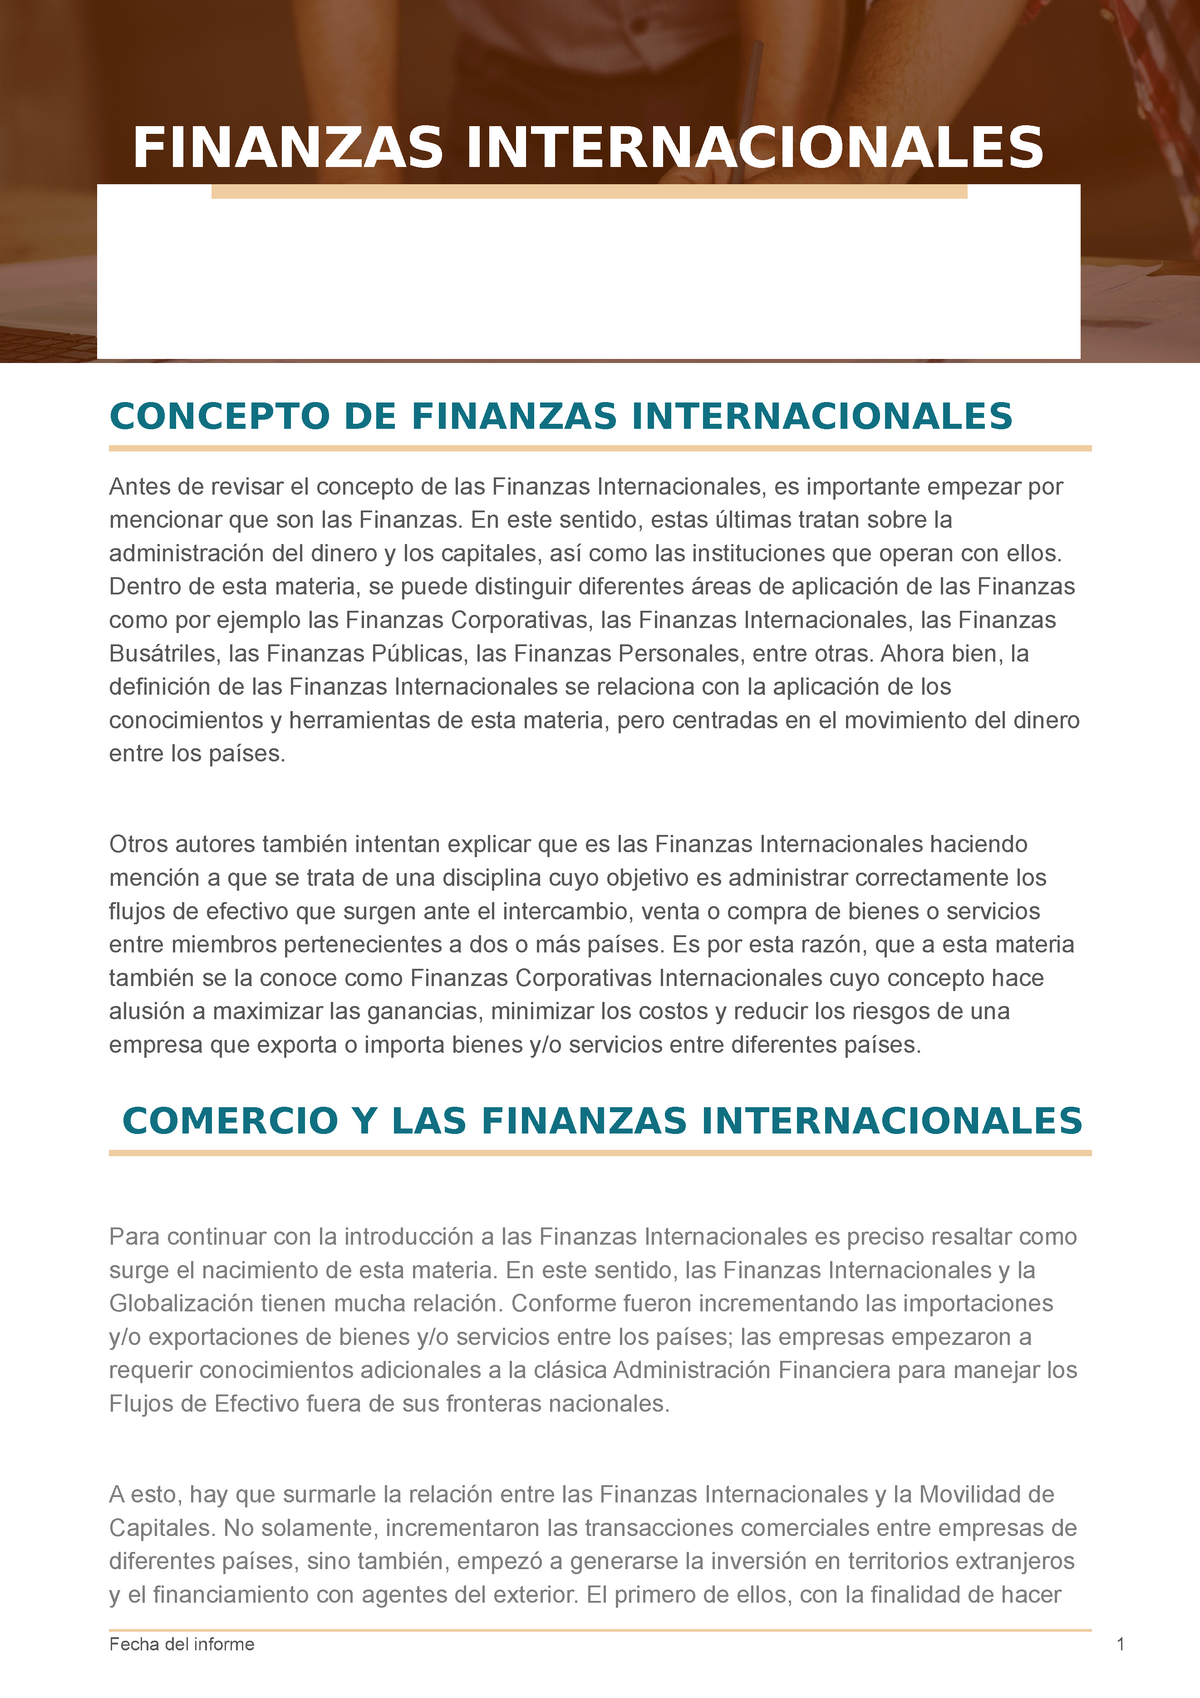 Finanzas Internacionales Conceptos Y Caracteristicas De Dicho Curso Finanzas Internacionales 0139